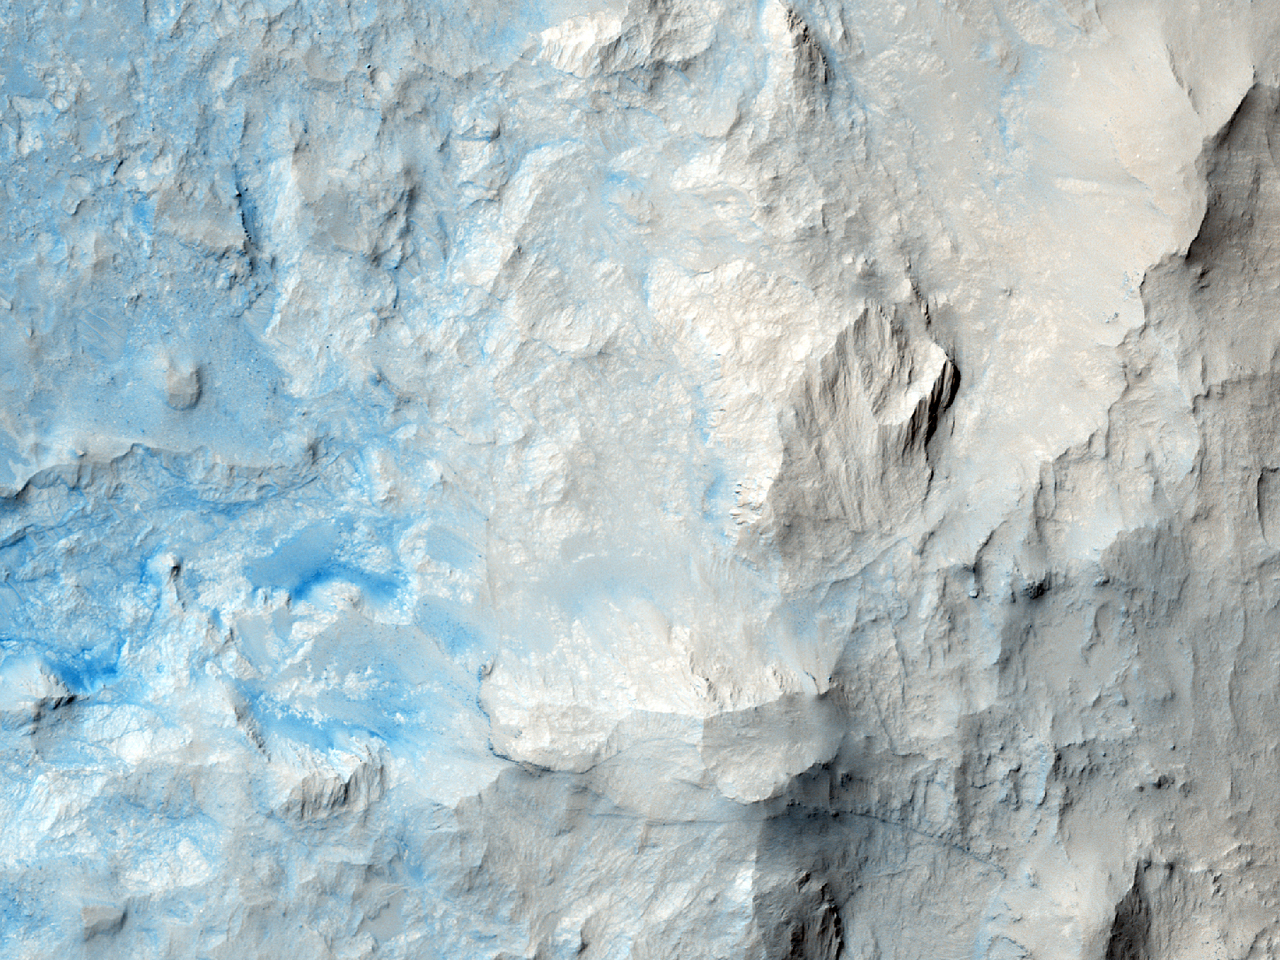 平原低地山顶上的火山口 (Isidis Planitia)